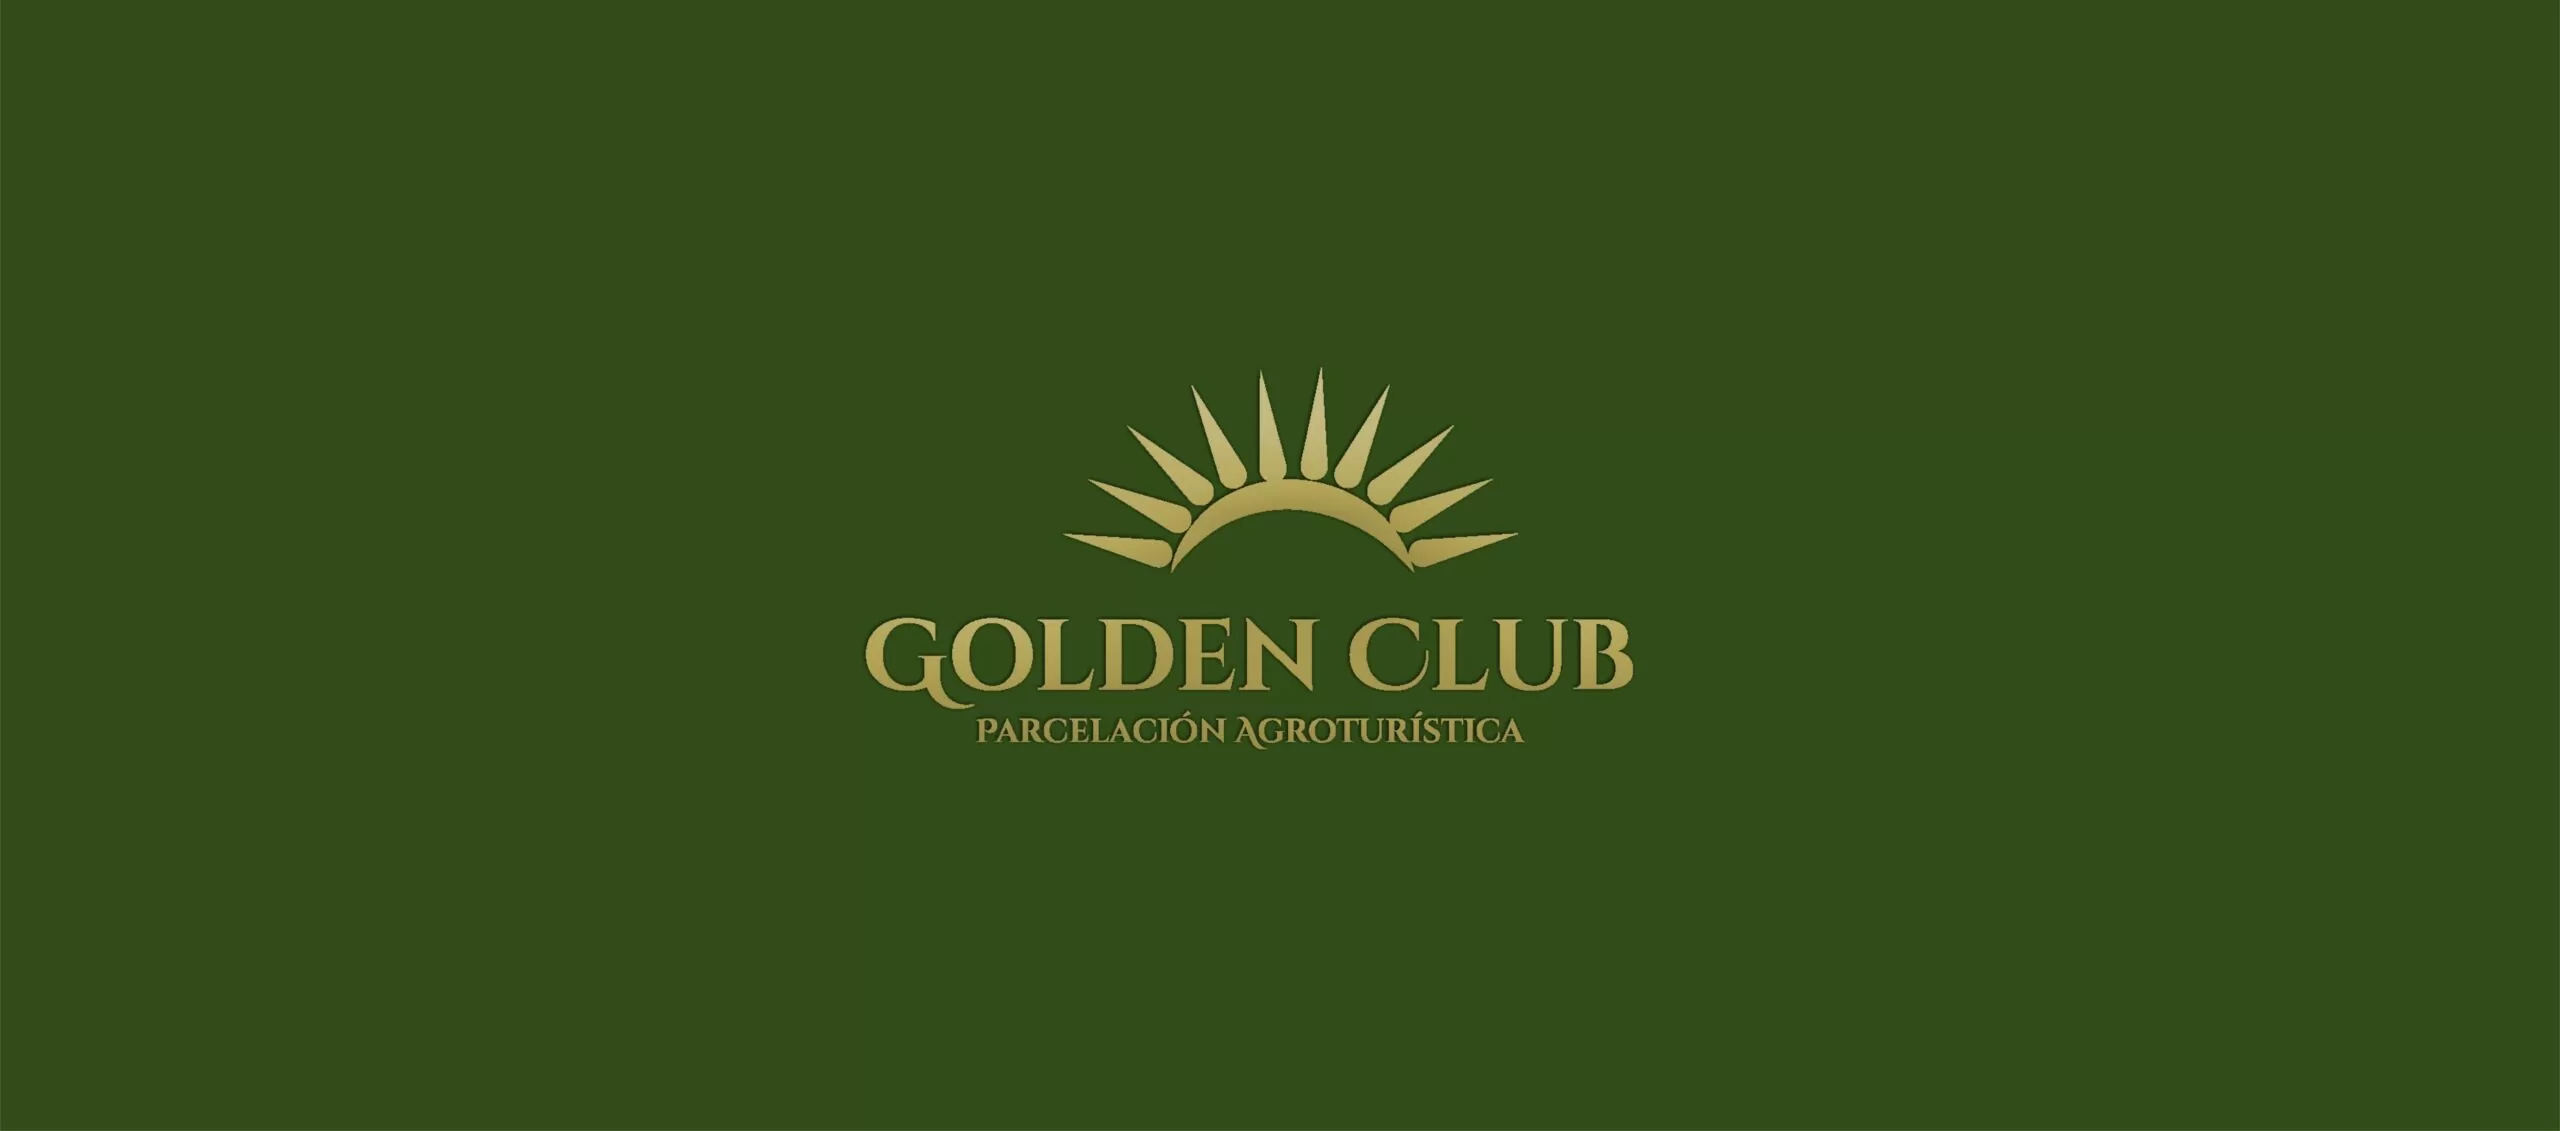 GOLDEN CLUB – PARCELAS AGROTURISTICAS